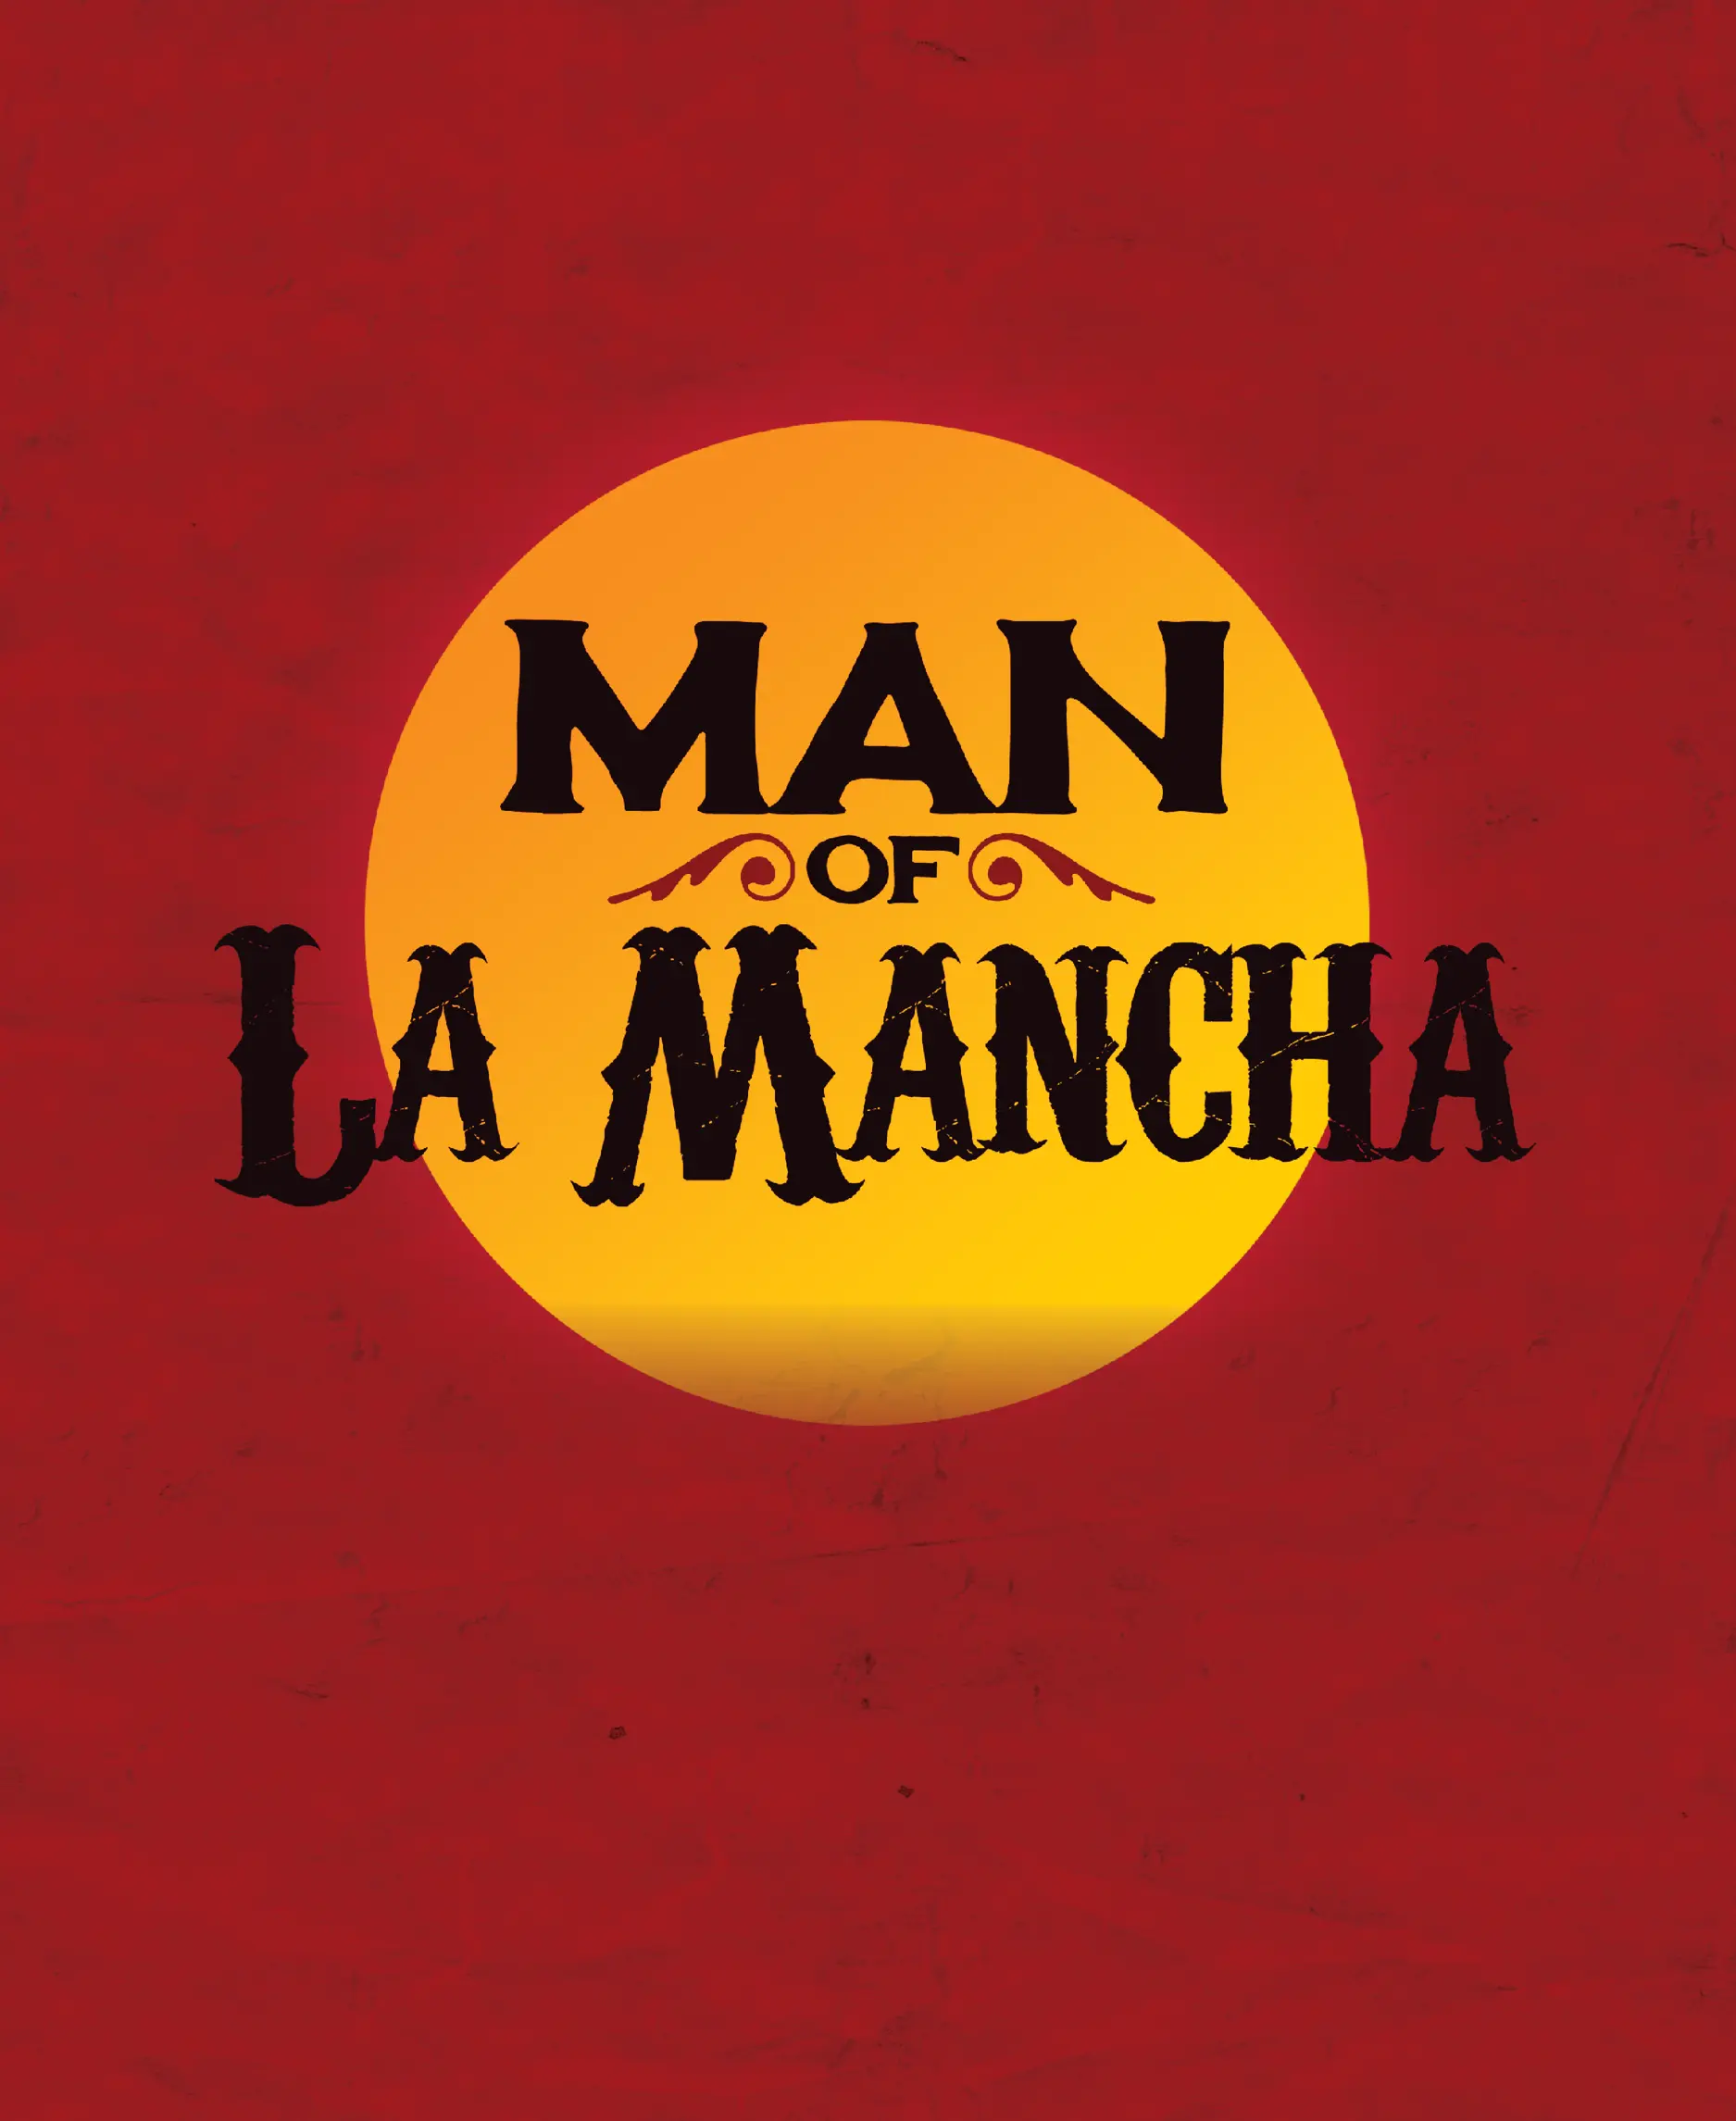 Man Of La Mancha show tickets honolulu events